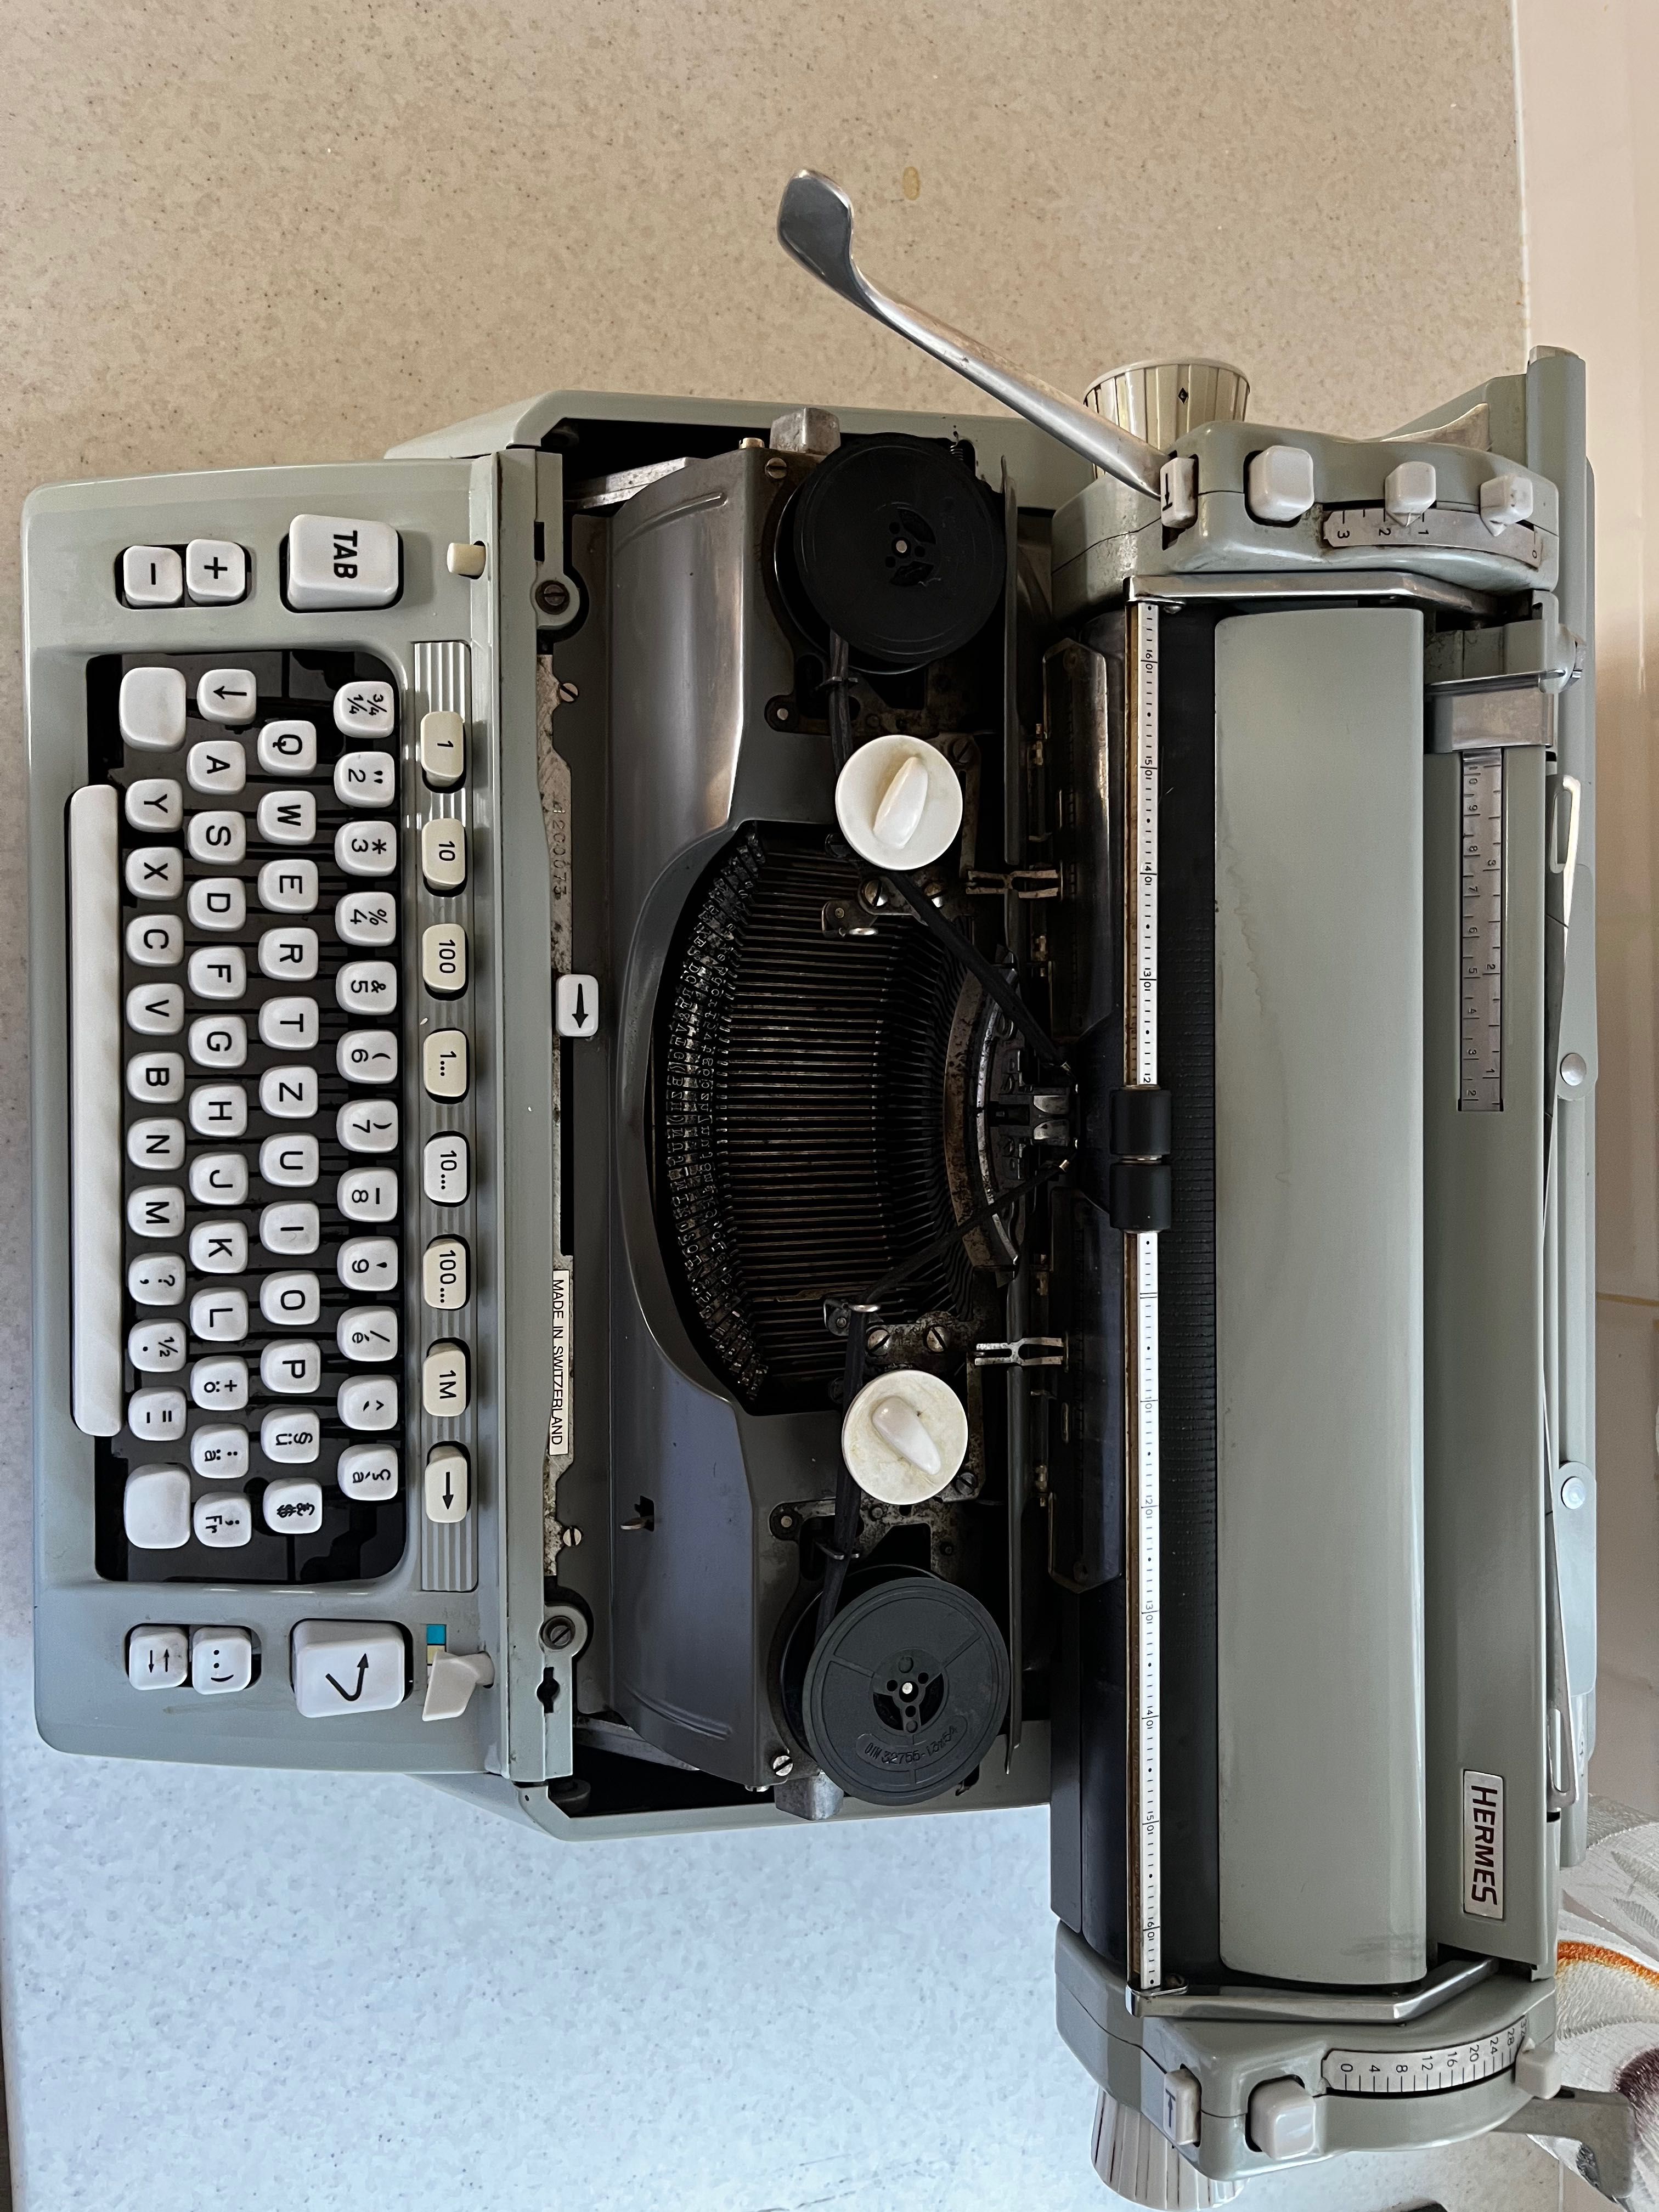 Vând masina de scris